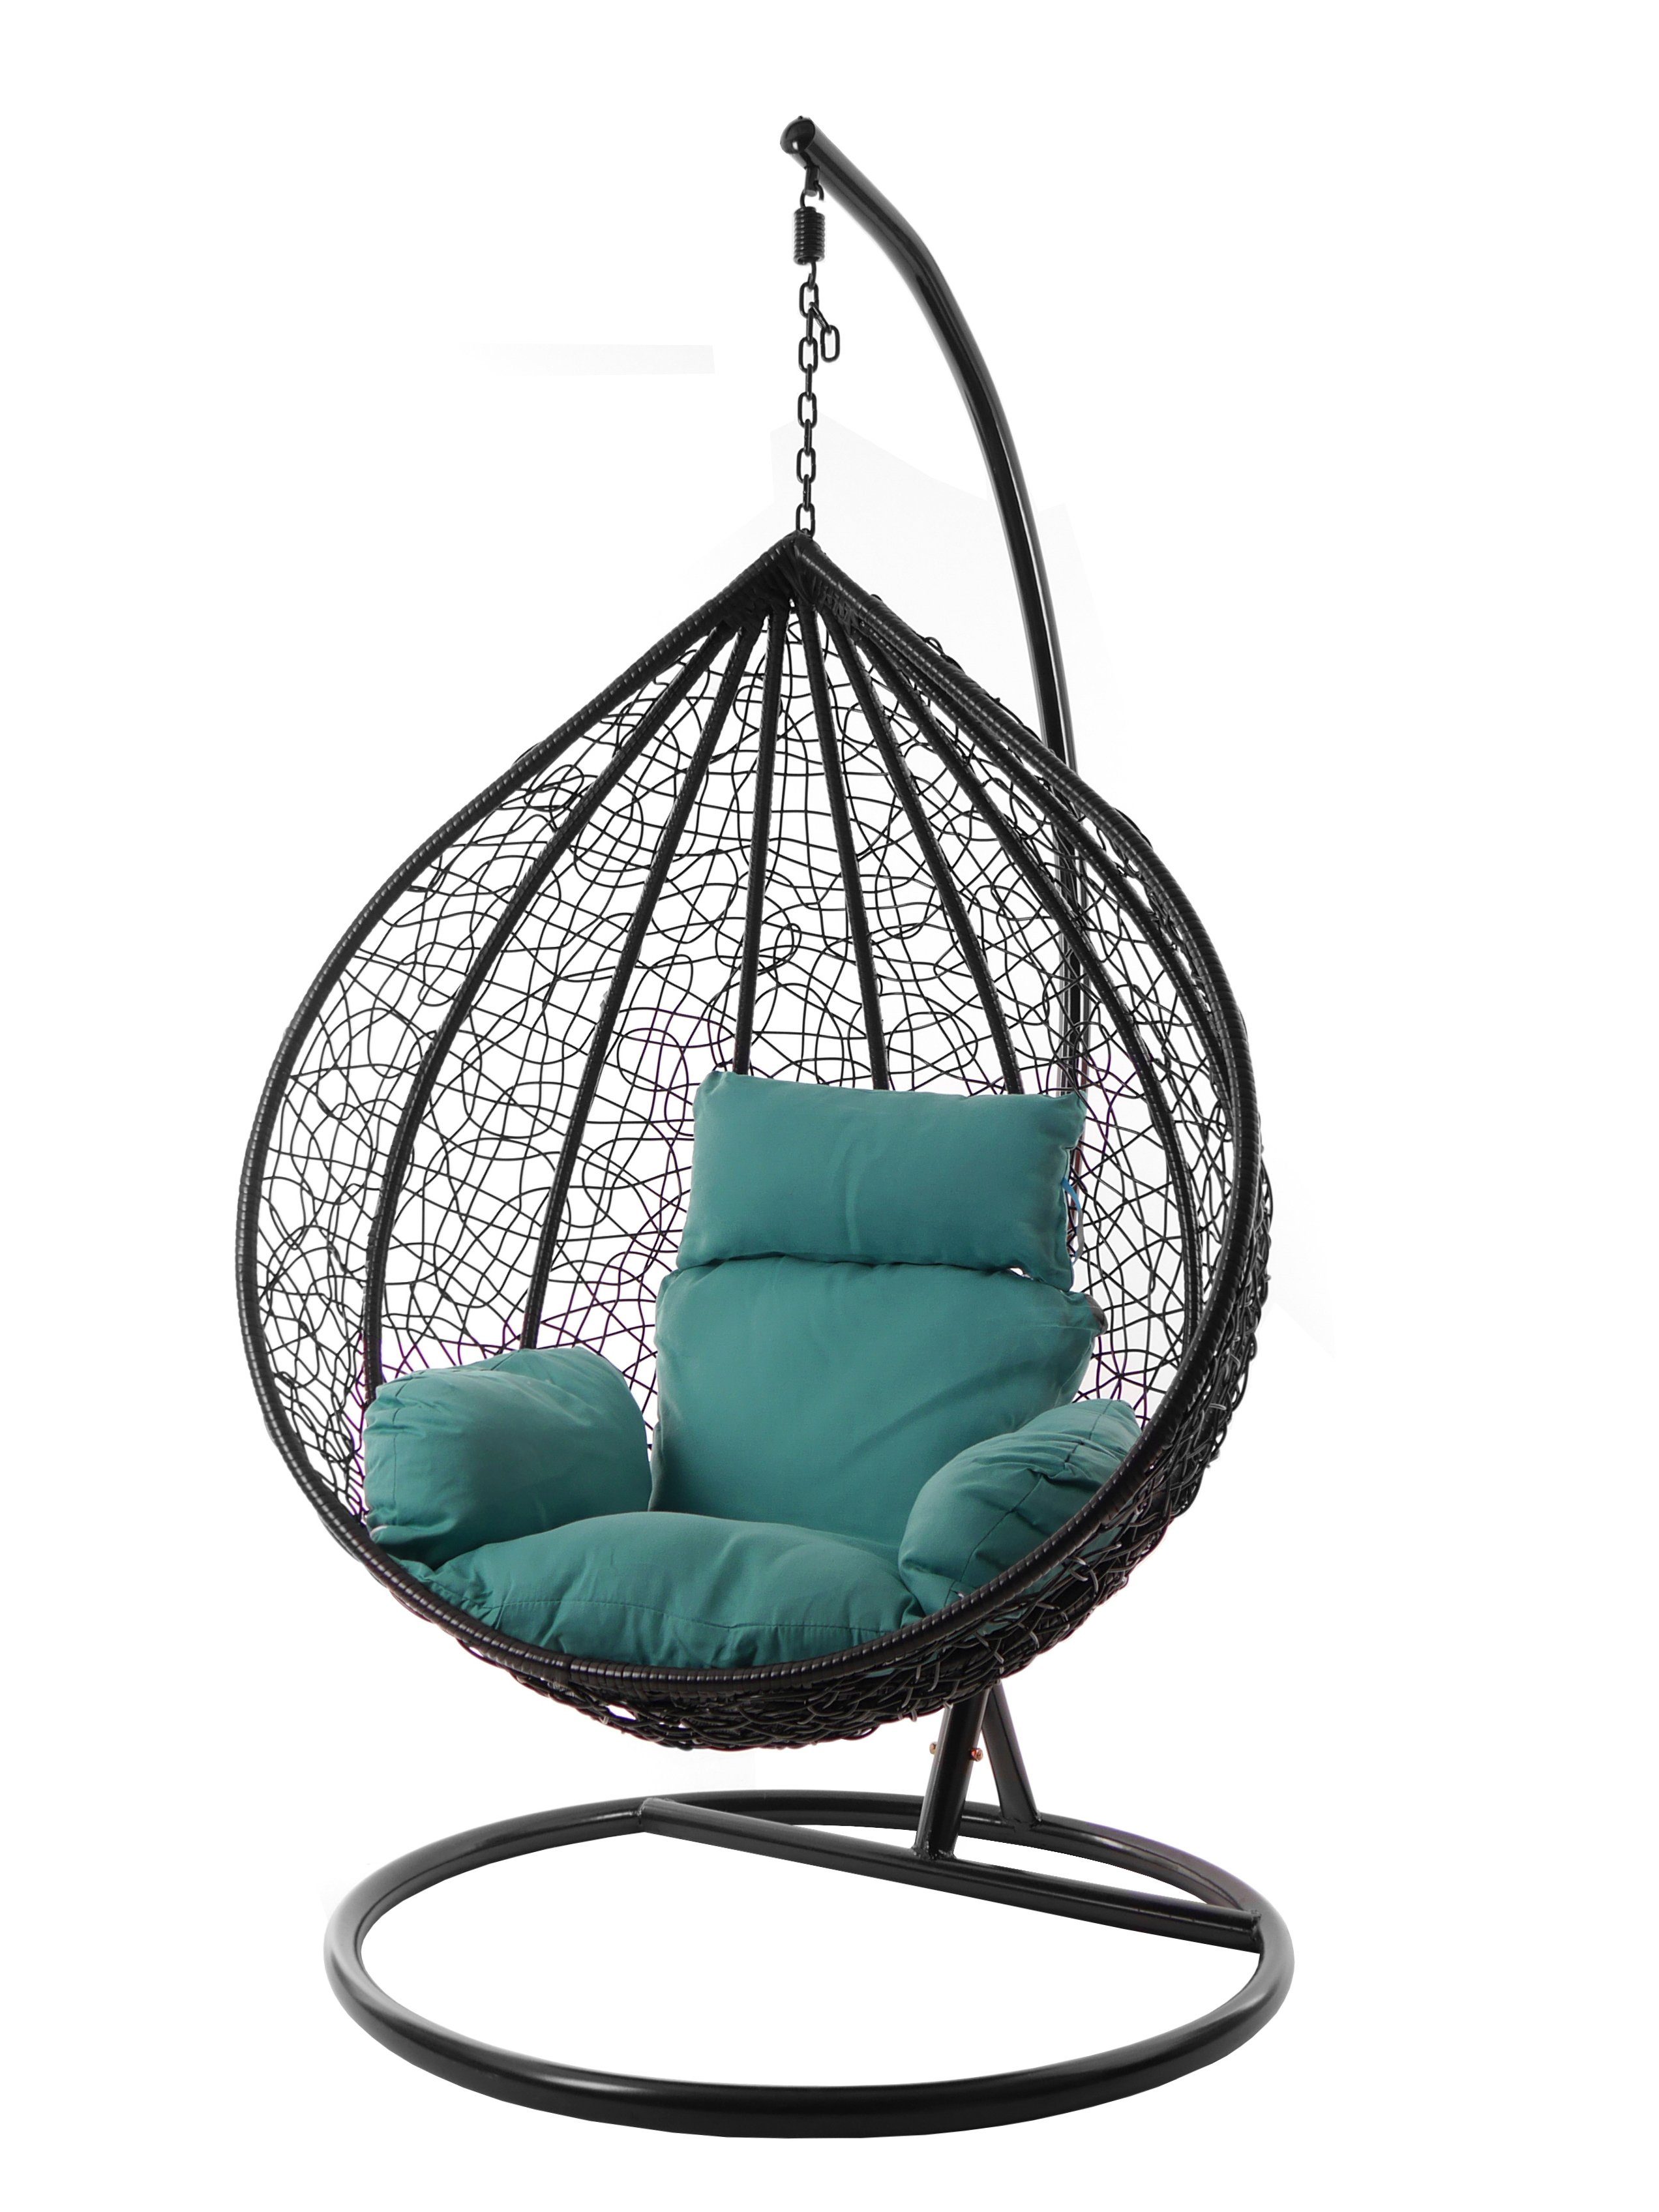 Hängesessel Nest-Kissen, Swing Hängesessel MANACOR ocean) Chair, verschiedene meeresblau Farben KIDEO schwarz, Gestell XXL edel, (5060 inklusive, Kissen und